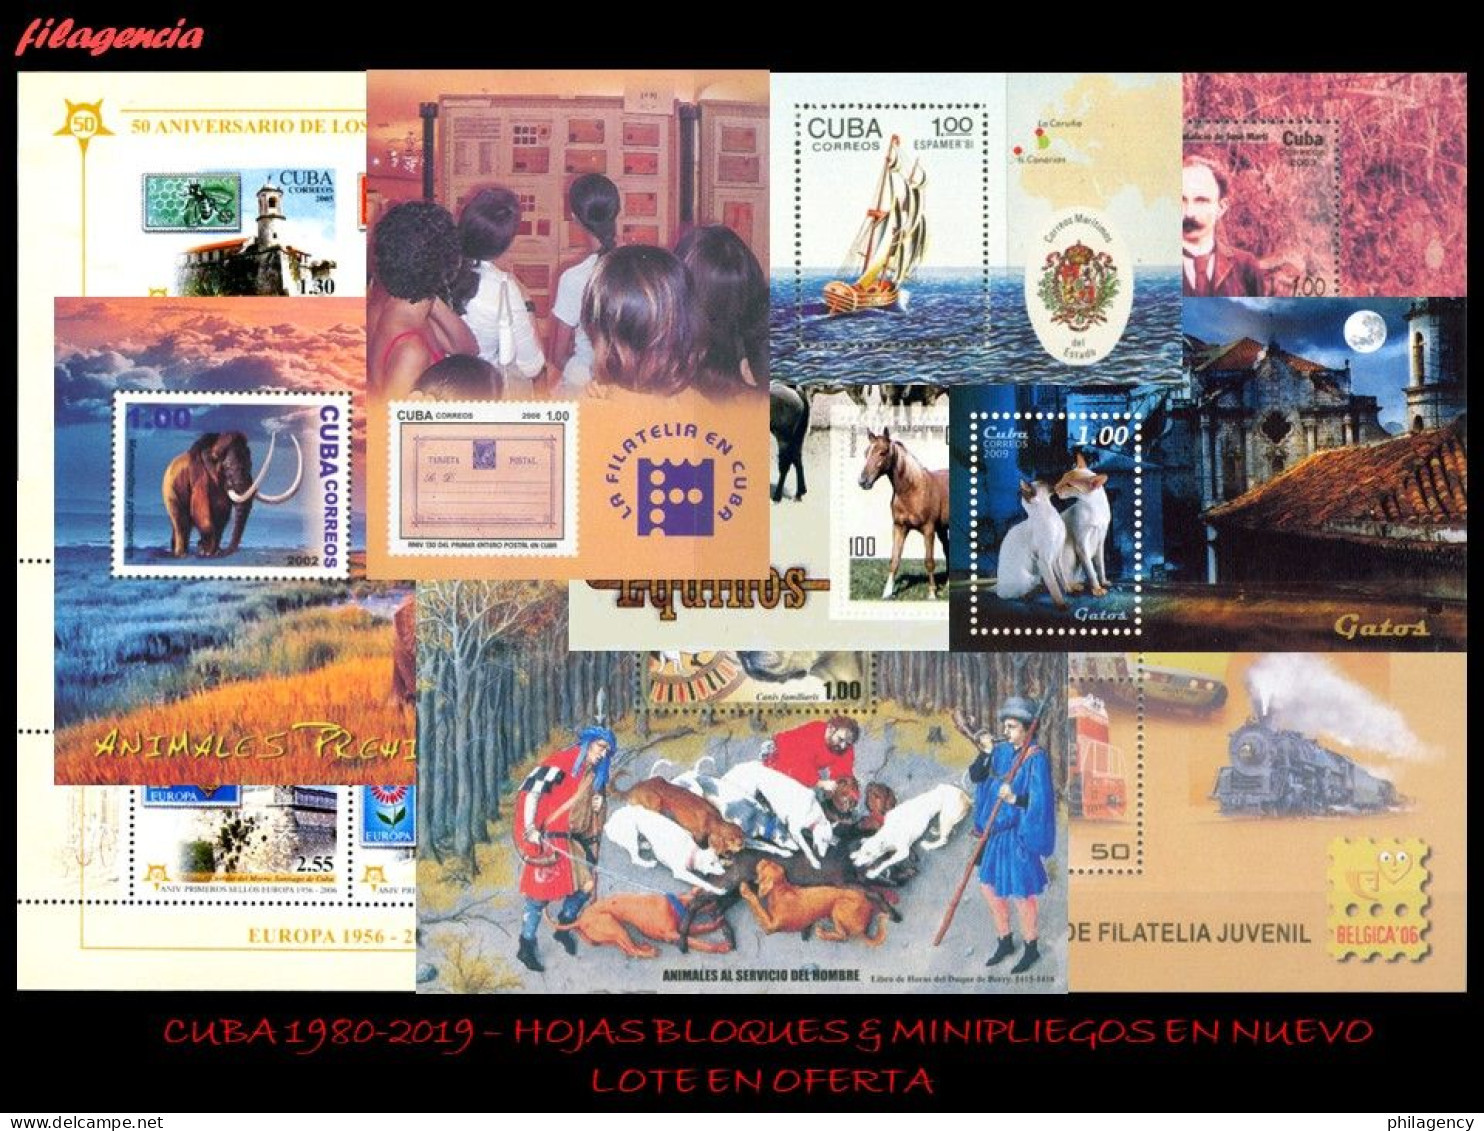 LOTES EN OFERTA. CUBA MINT. 1980-2019 LOTE DE 100 HOJAS BLOQUES & MINIPLIEGOS DIFERENTES MNH - Blocks & Sheetlets